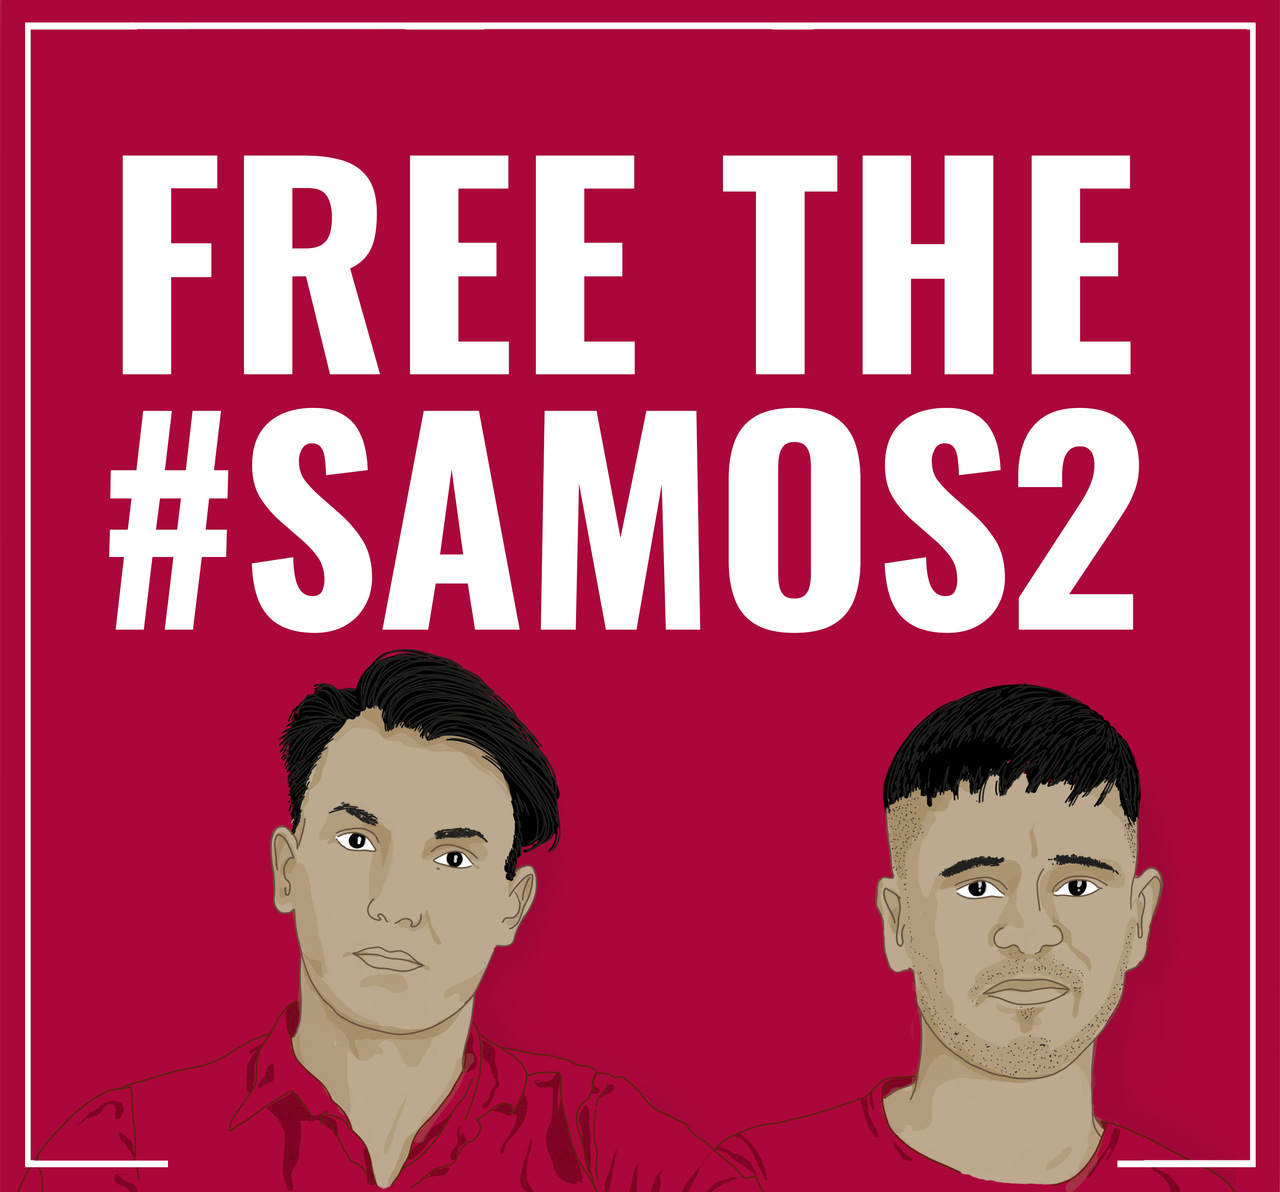 Das wahre Verbrechen ist das Grenzregime - Freiheit für #Samos2